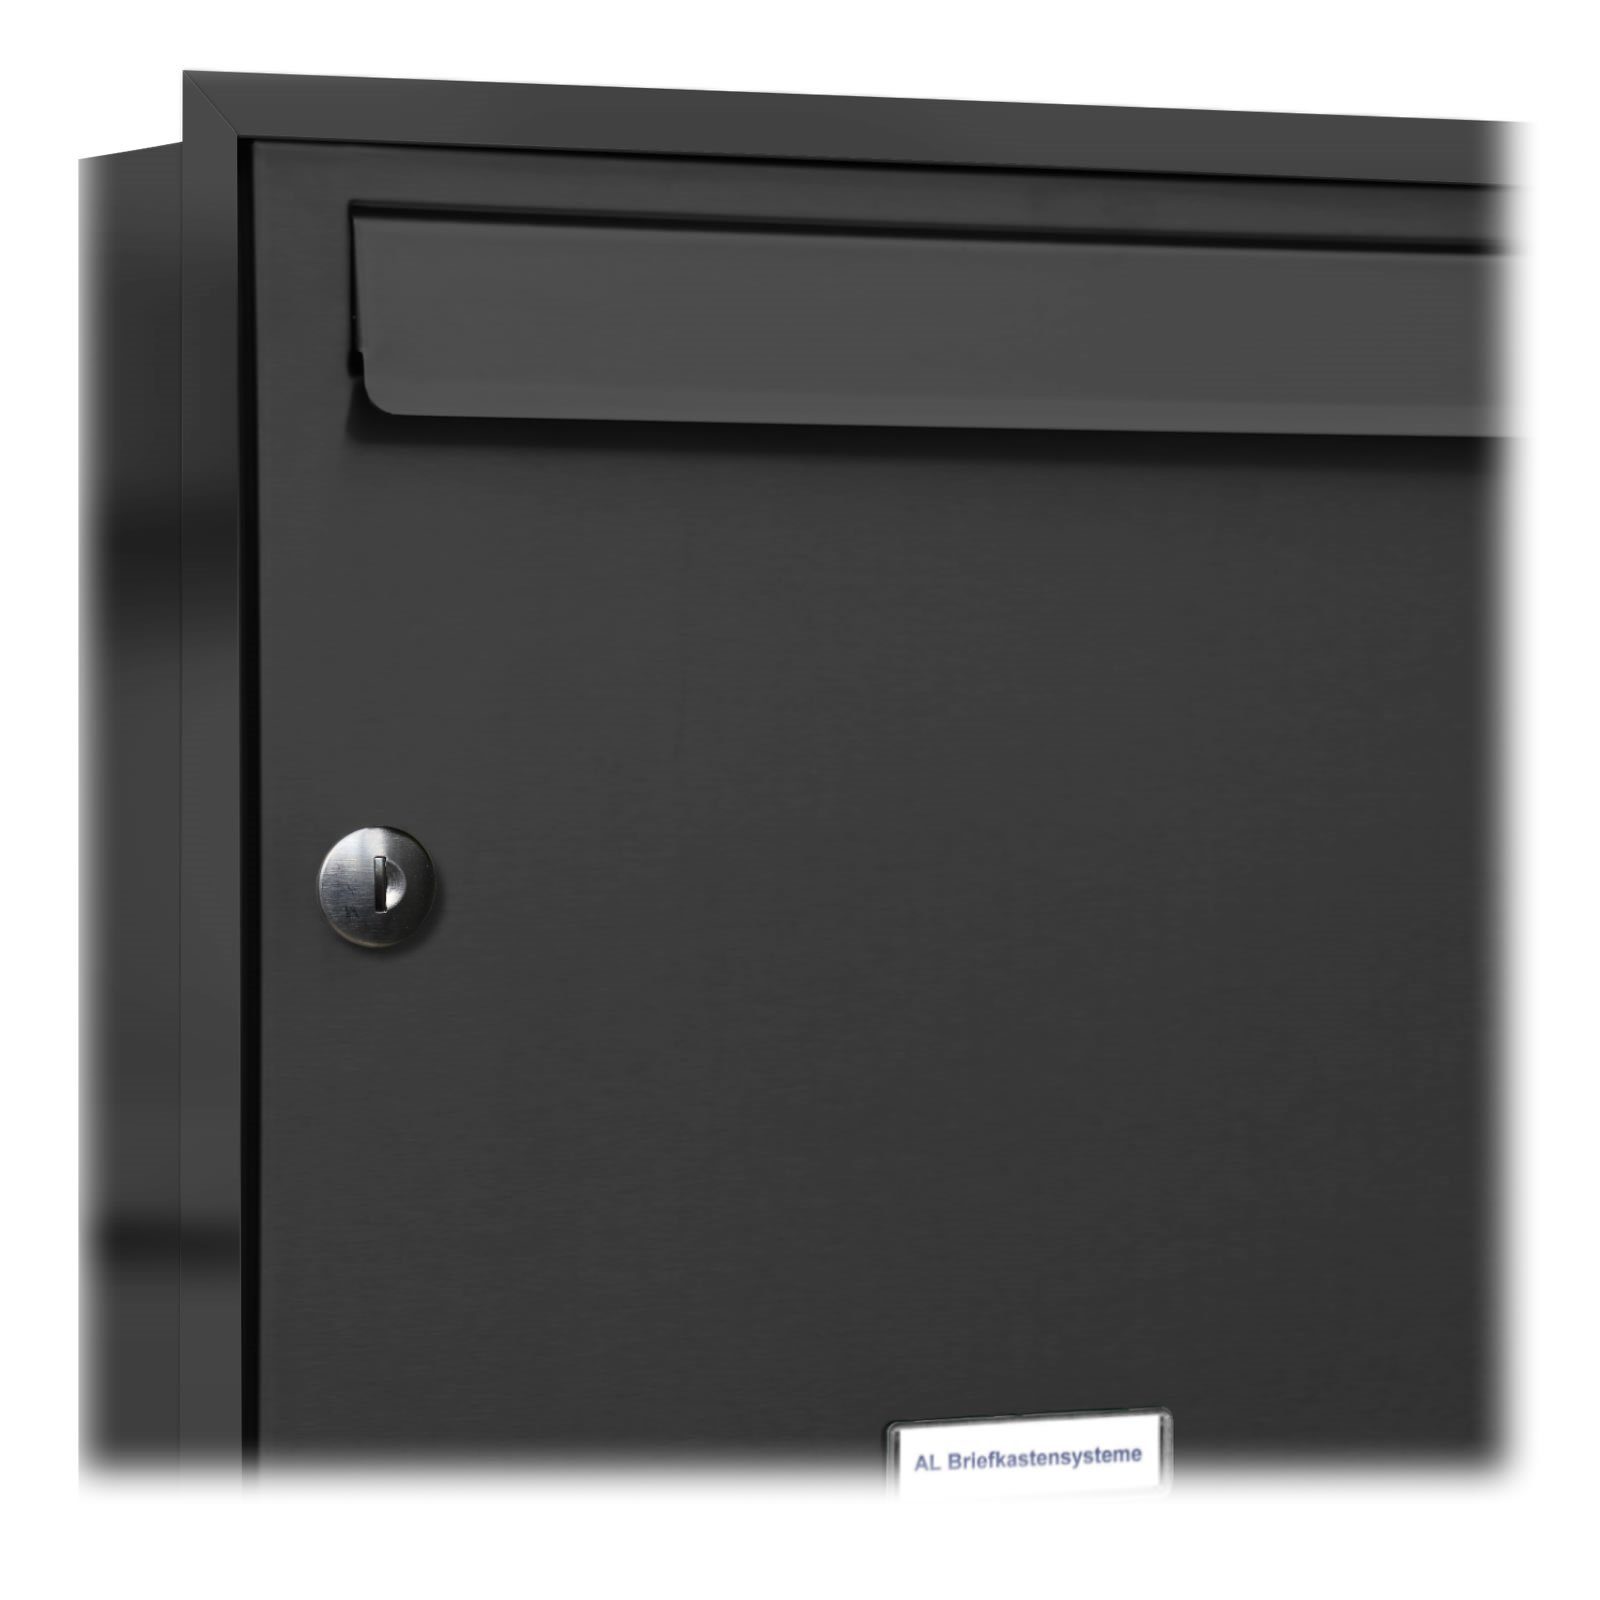 Links Briefkastensysteme Wandbriefkasten 1er AL Briefkasten mit Unterputz Klingel Premium A4 Anthrazit